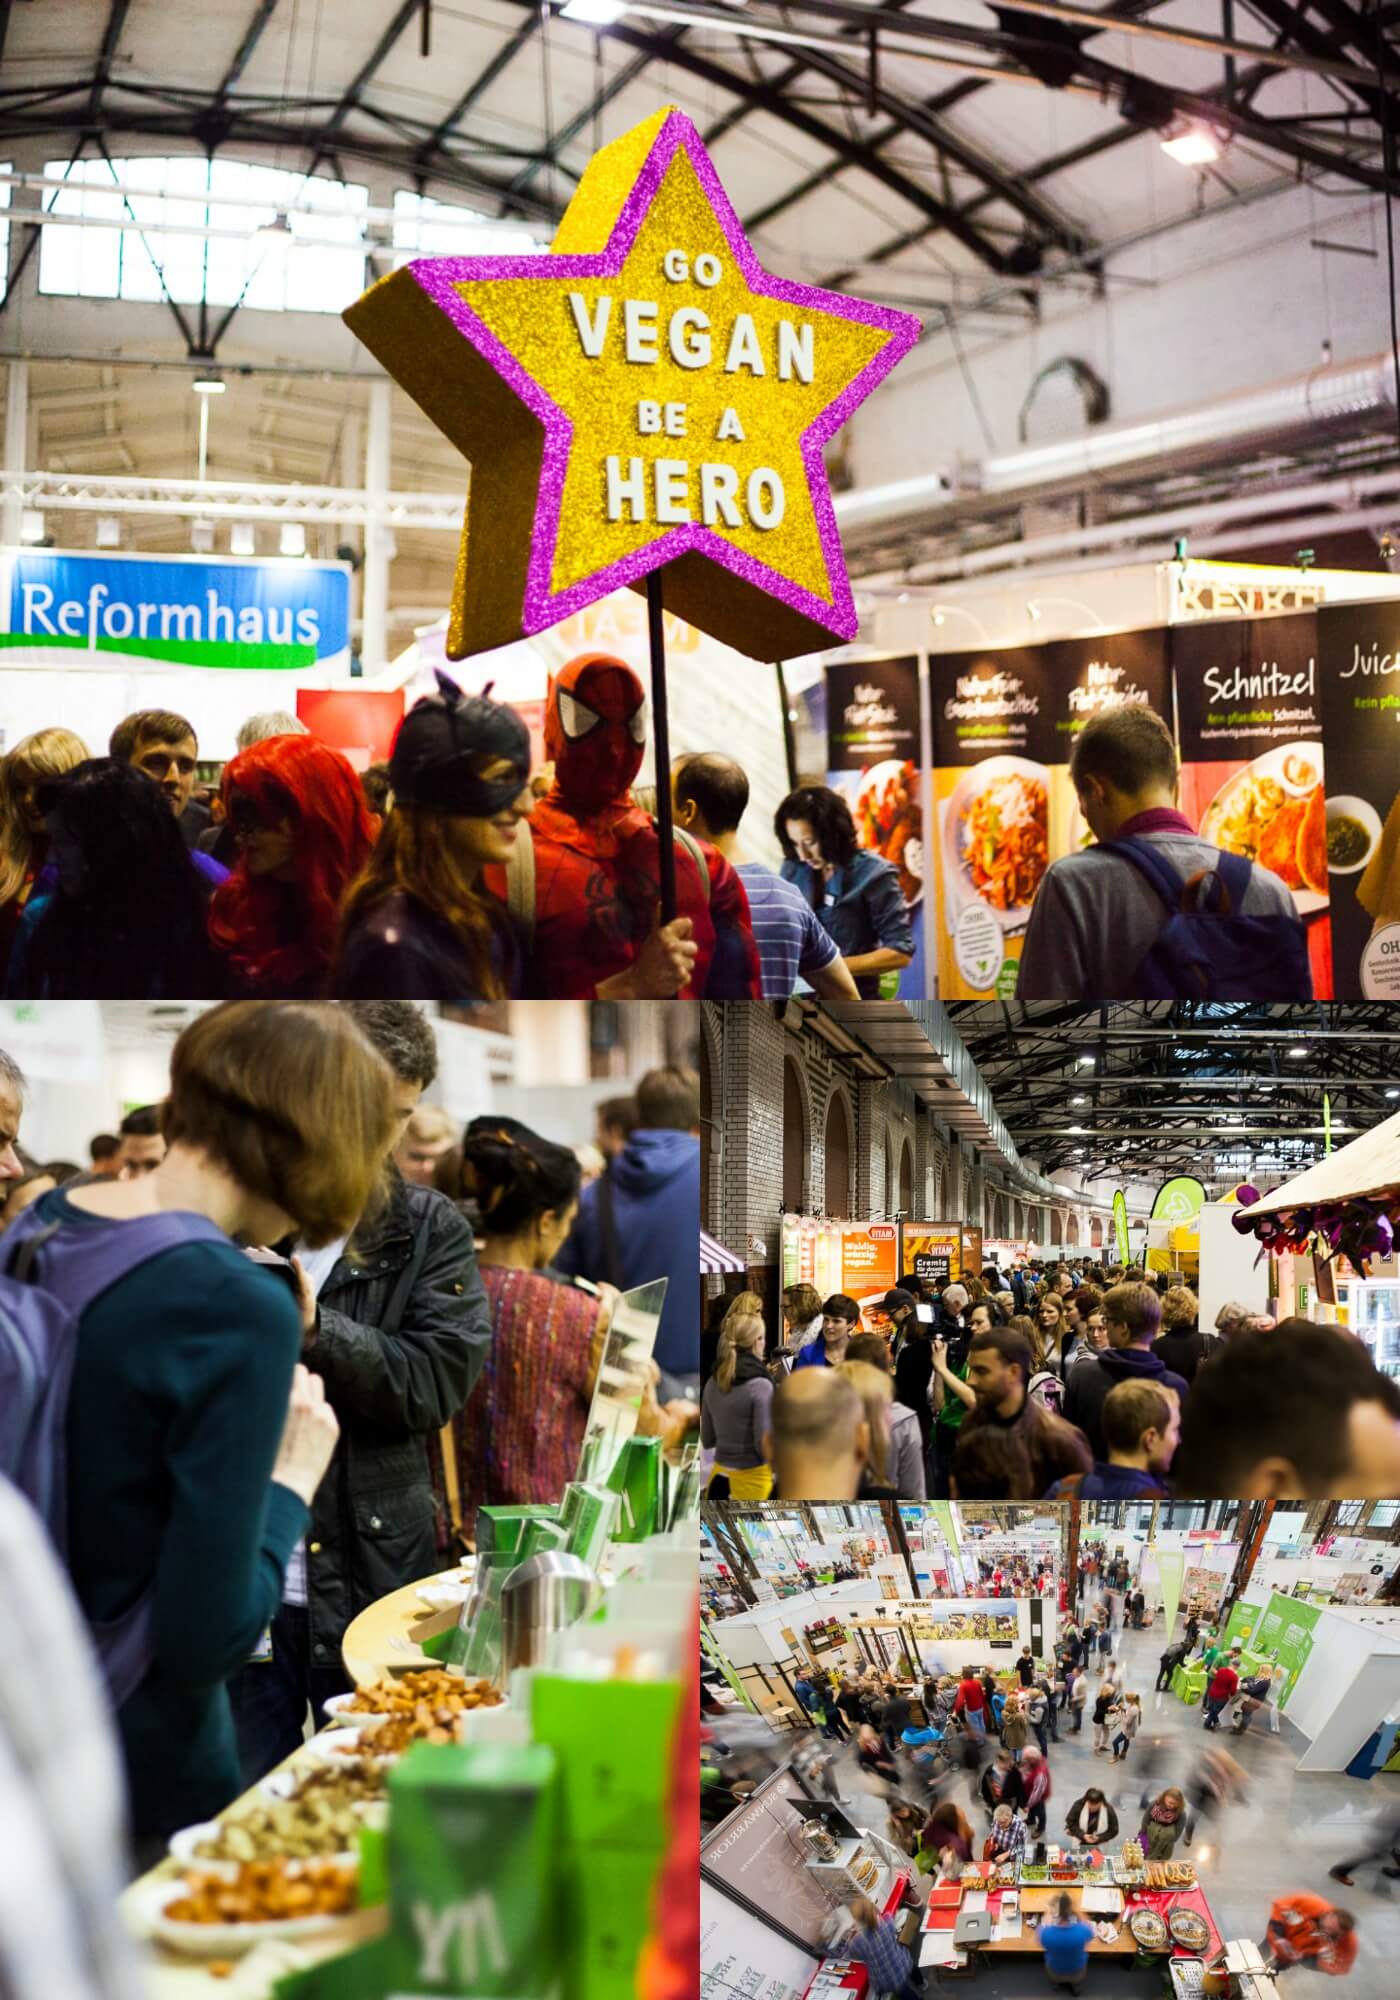 Go Vegan be a Hero – die VeggieWorld Hamburg freut sich auf deinen Besuch! Alles rund um den veganen Lebensstil. Noch bis morgen!